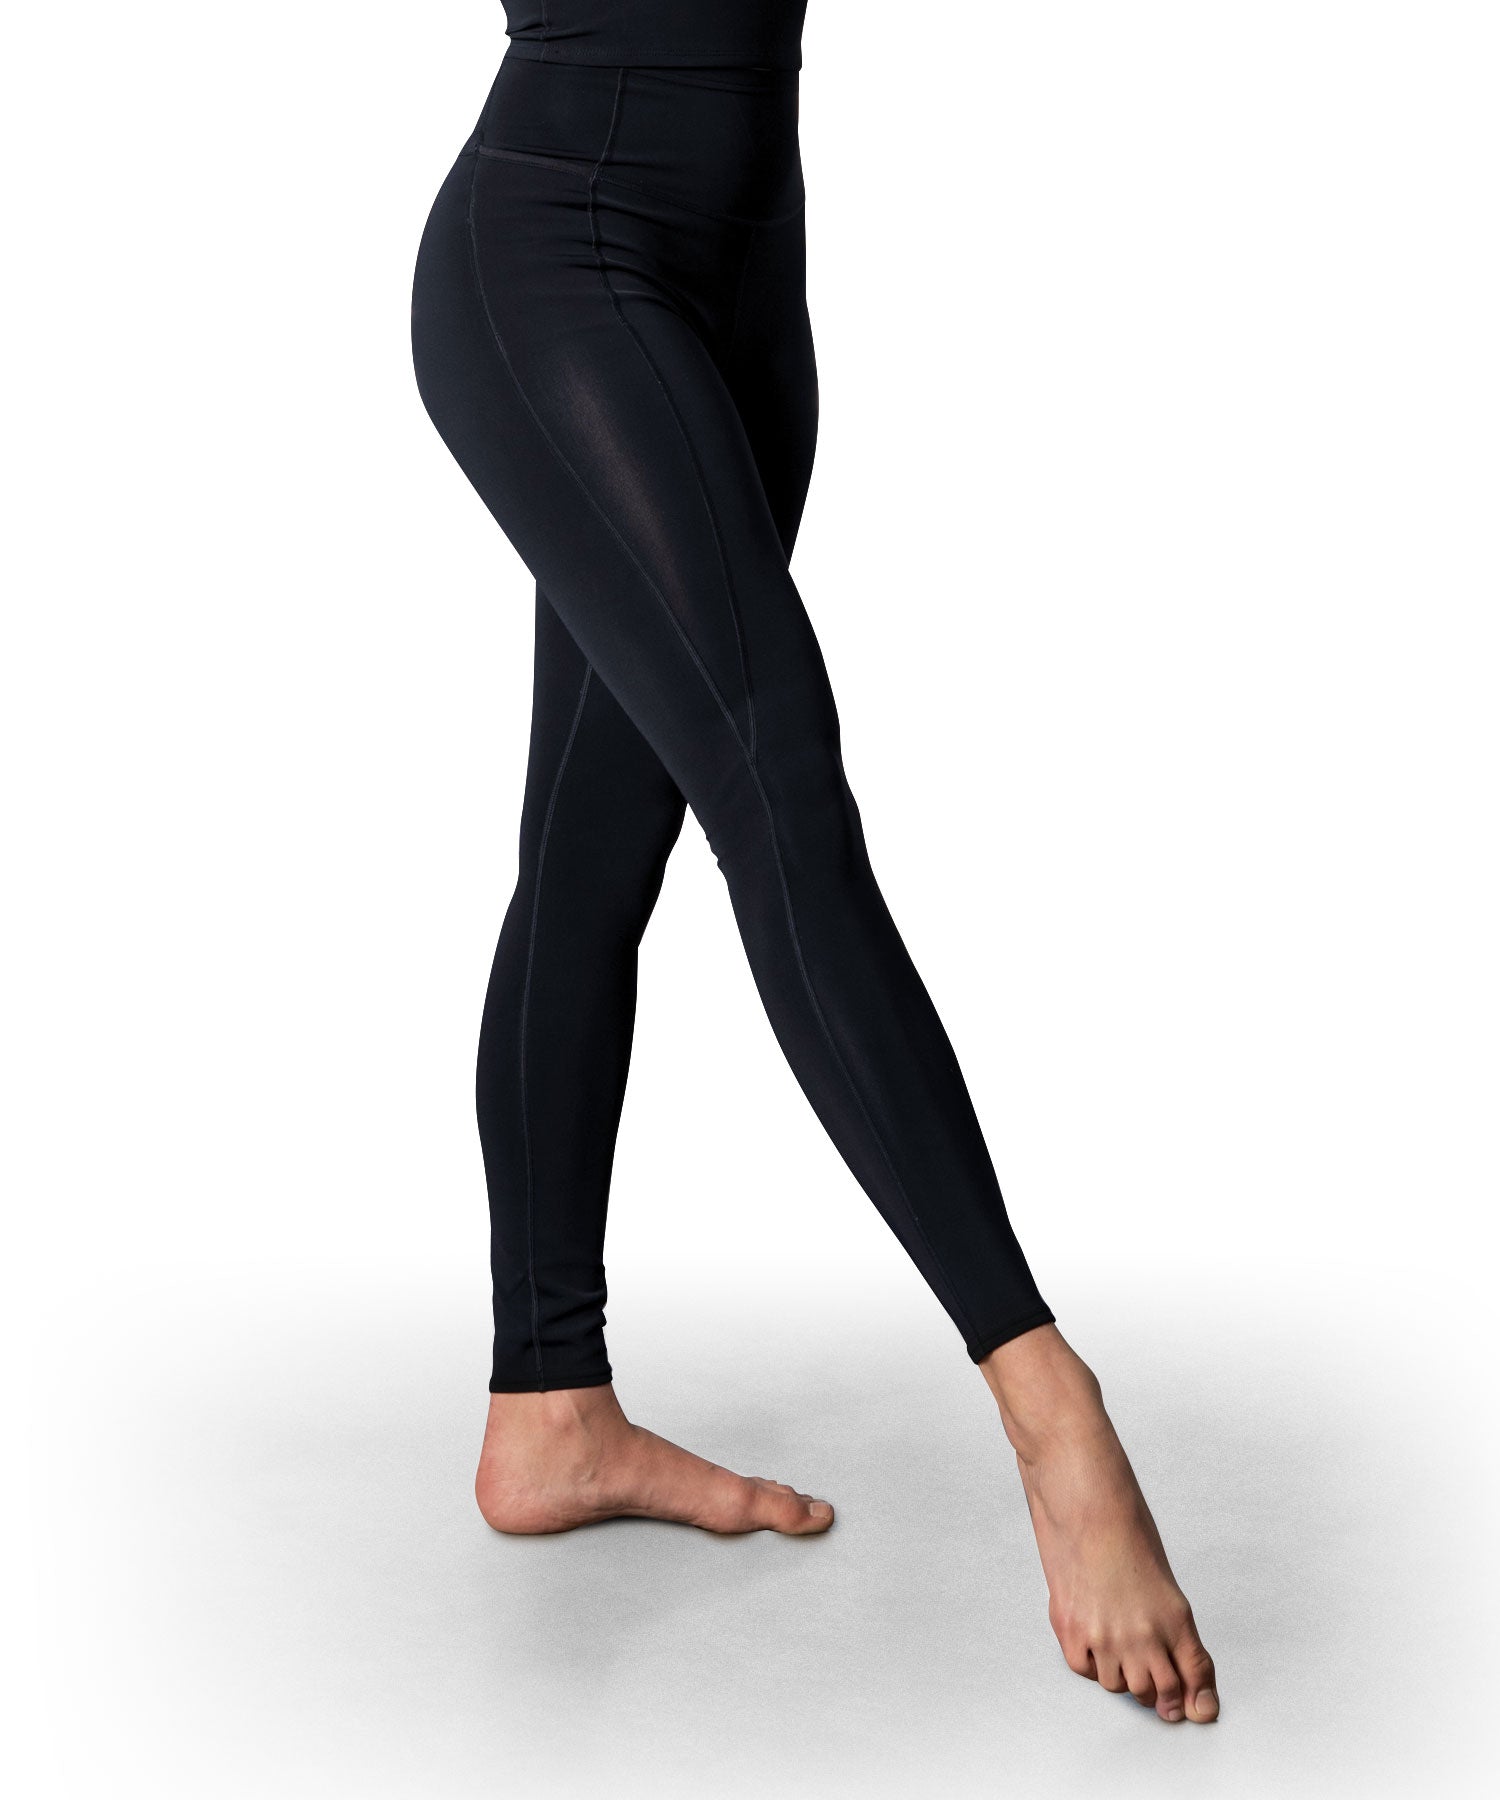 https://pommello.com/cdn/shop/products/Pommello_Pants-Yoga-Women_1500x.jpg?v=1628564065